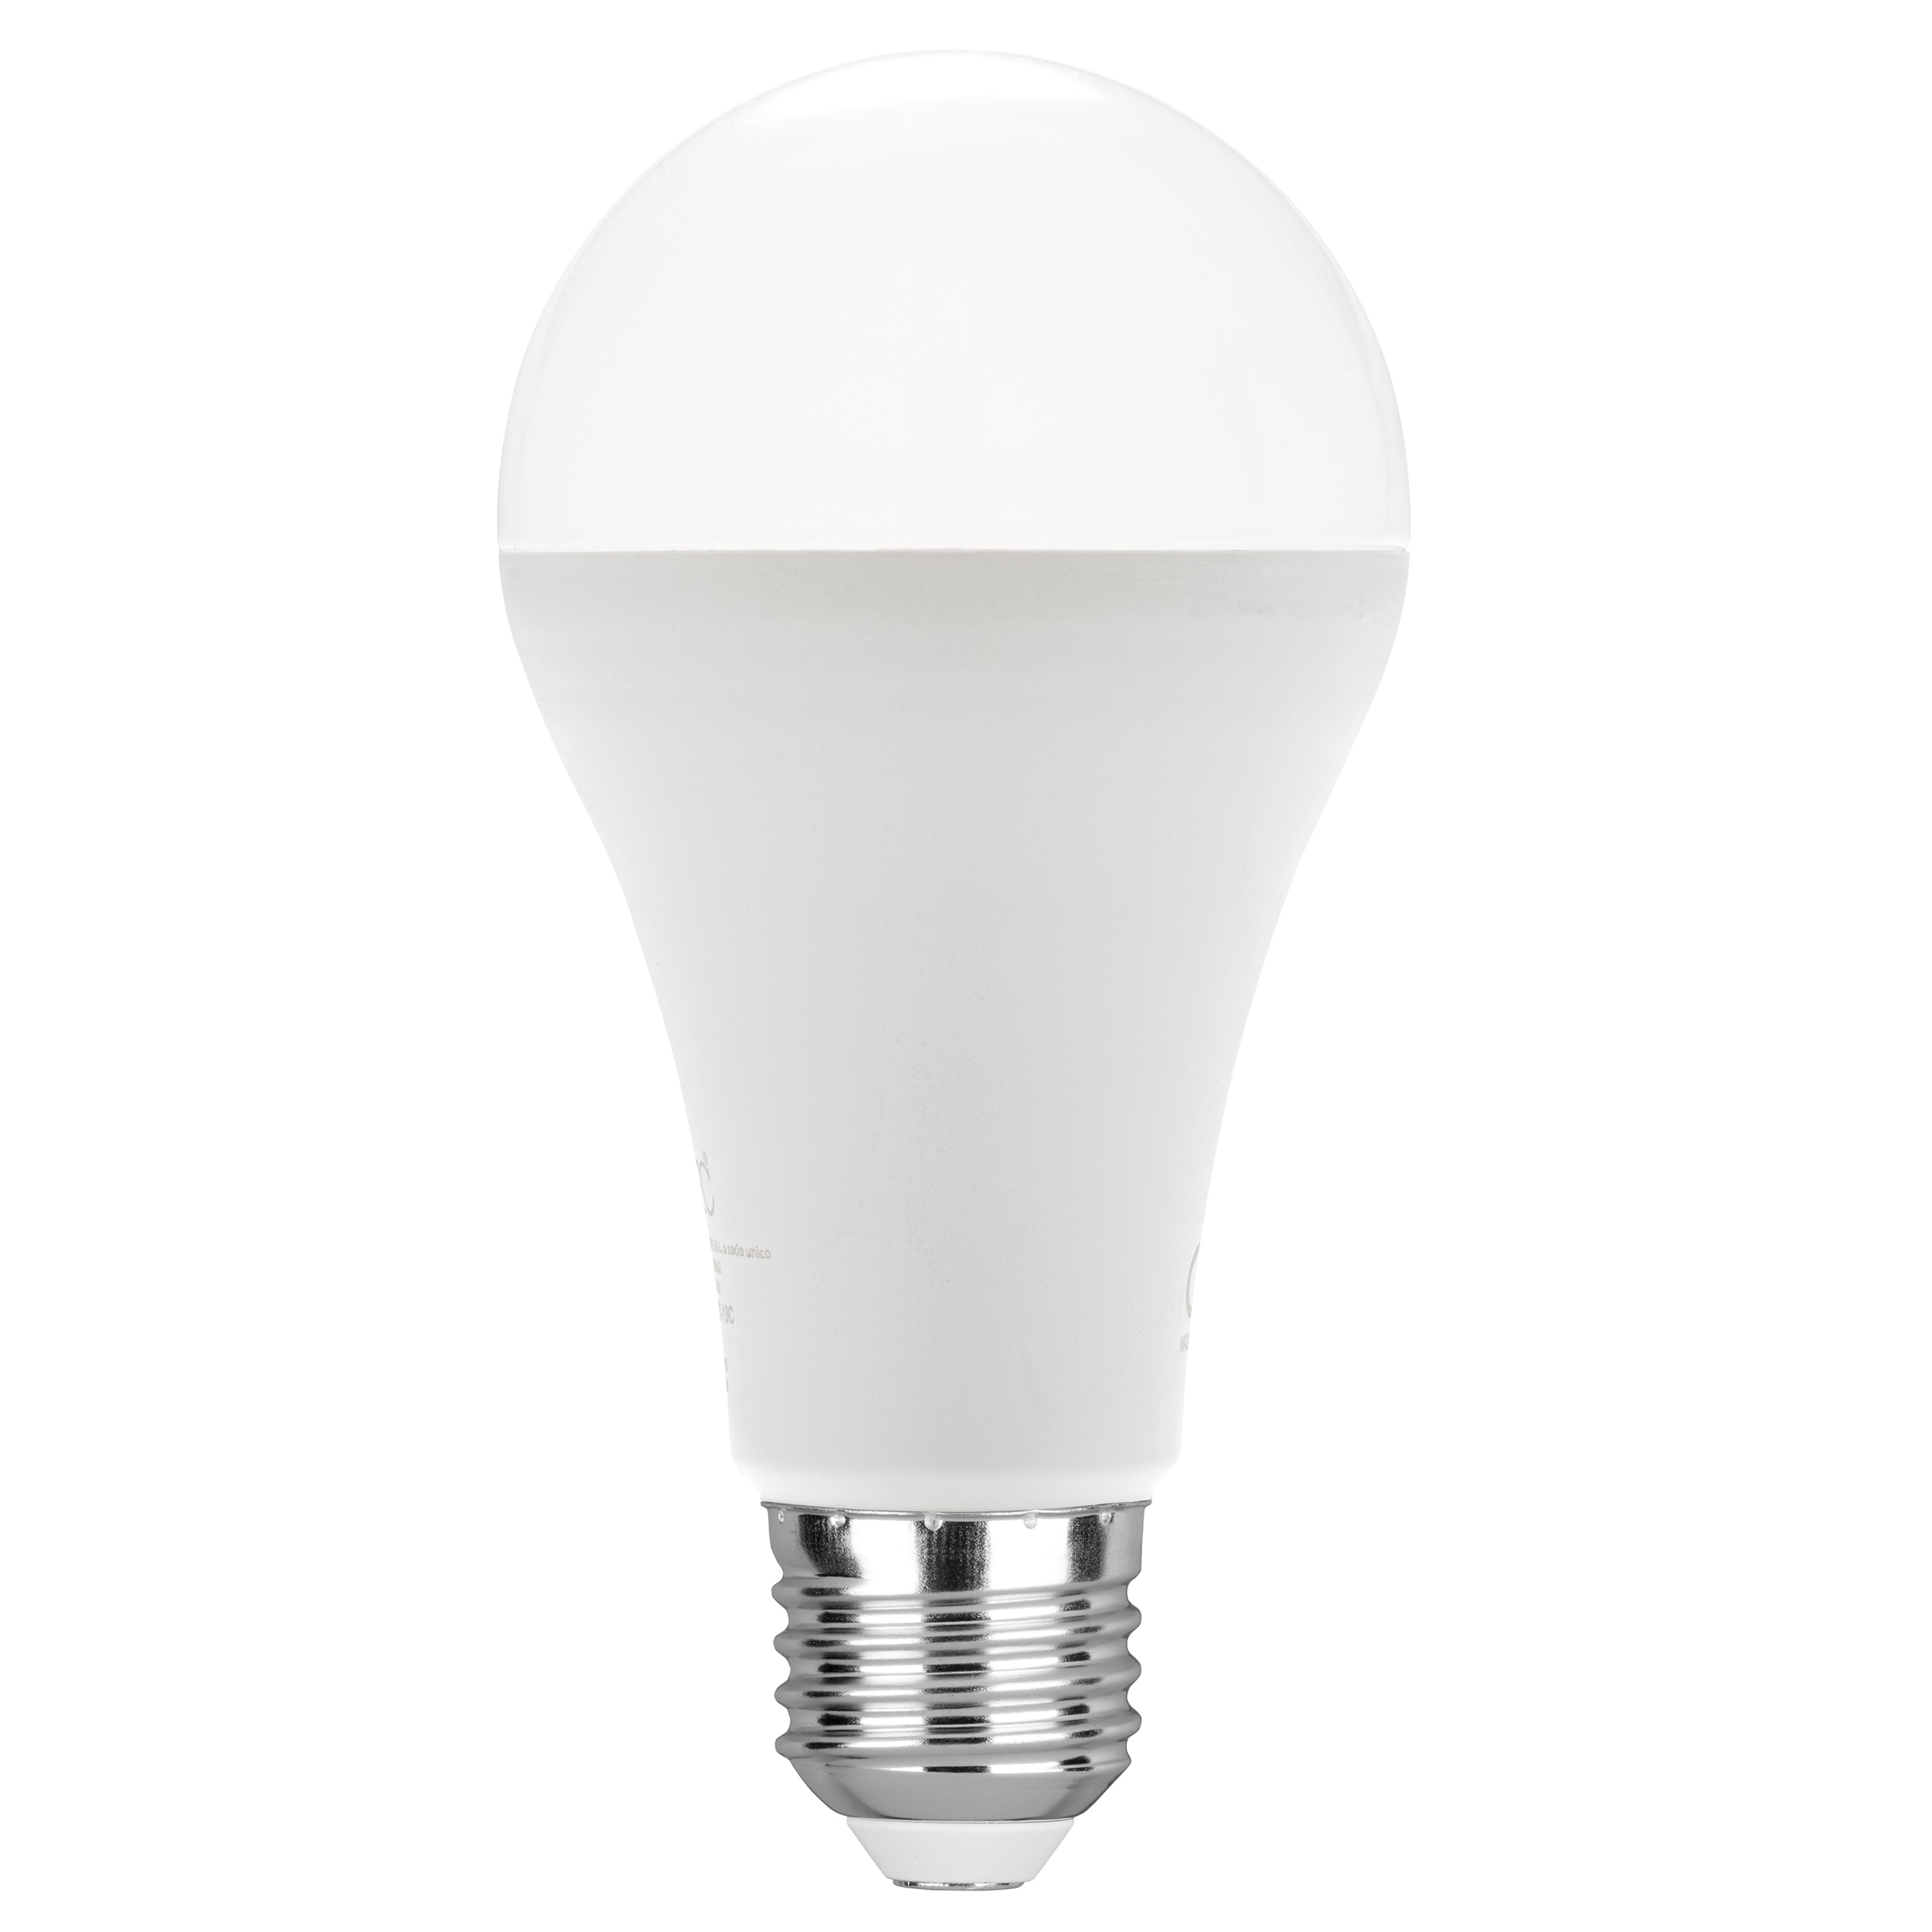 Ampoule LED KLASSIC lumière froide 19W culot E27 2618L 129mm 